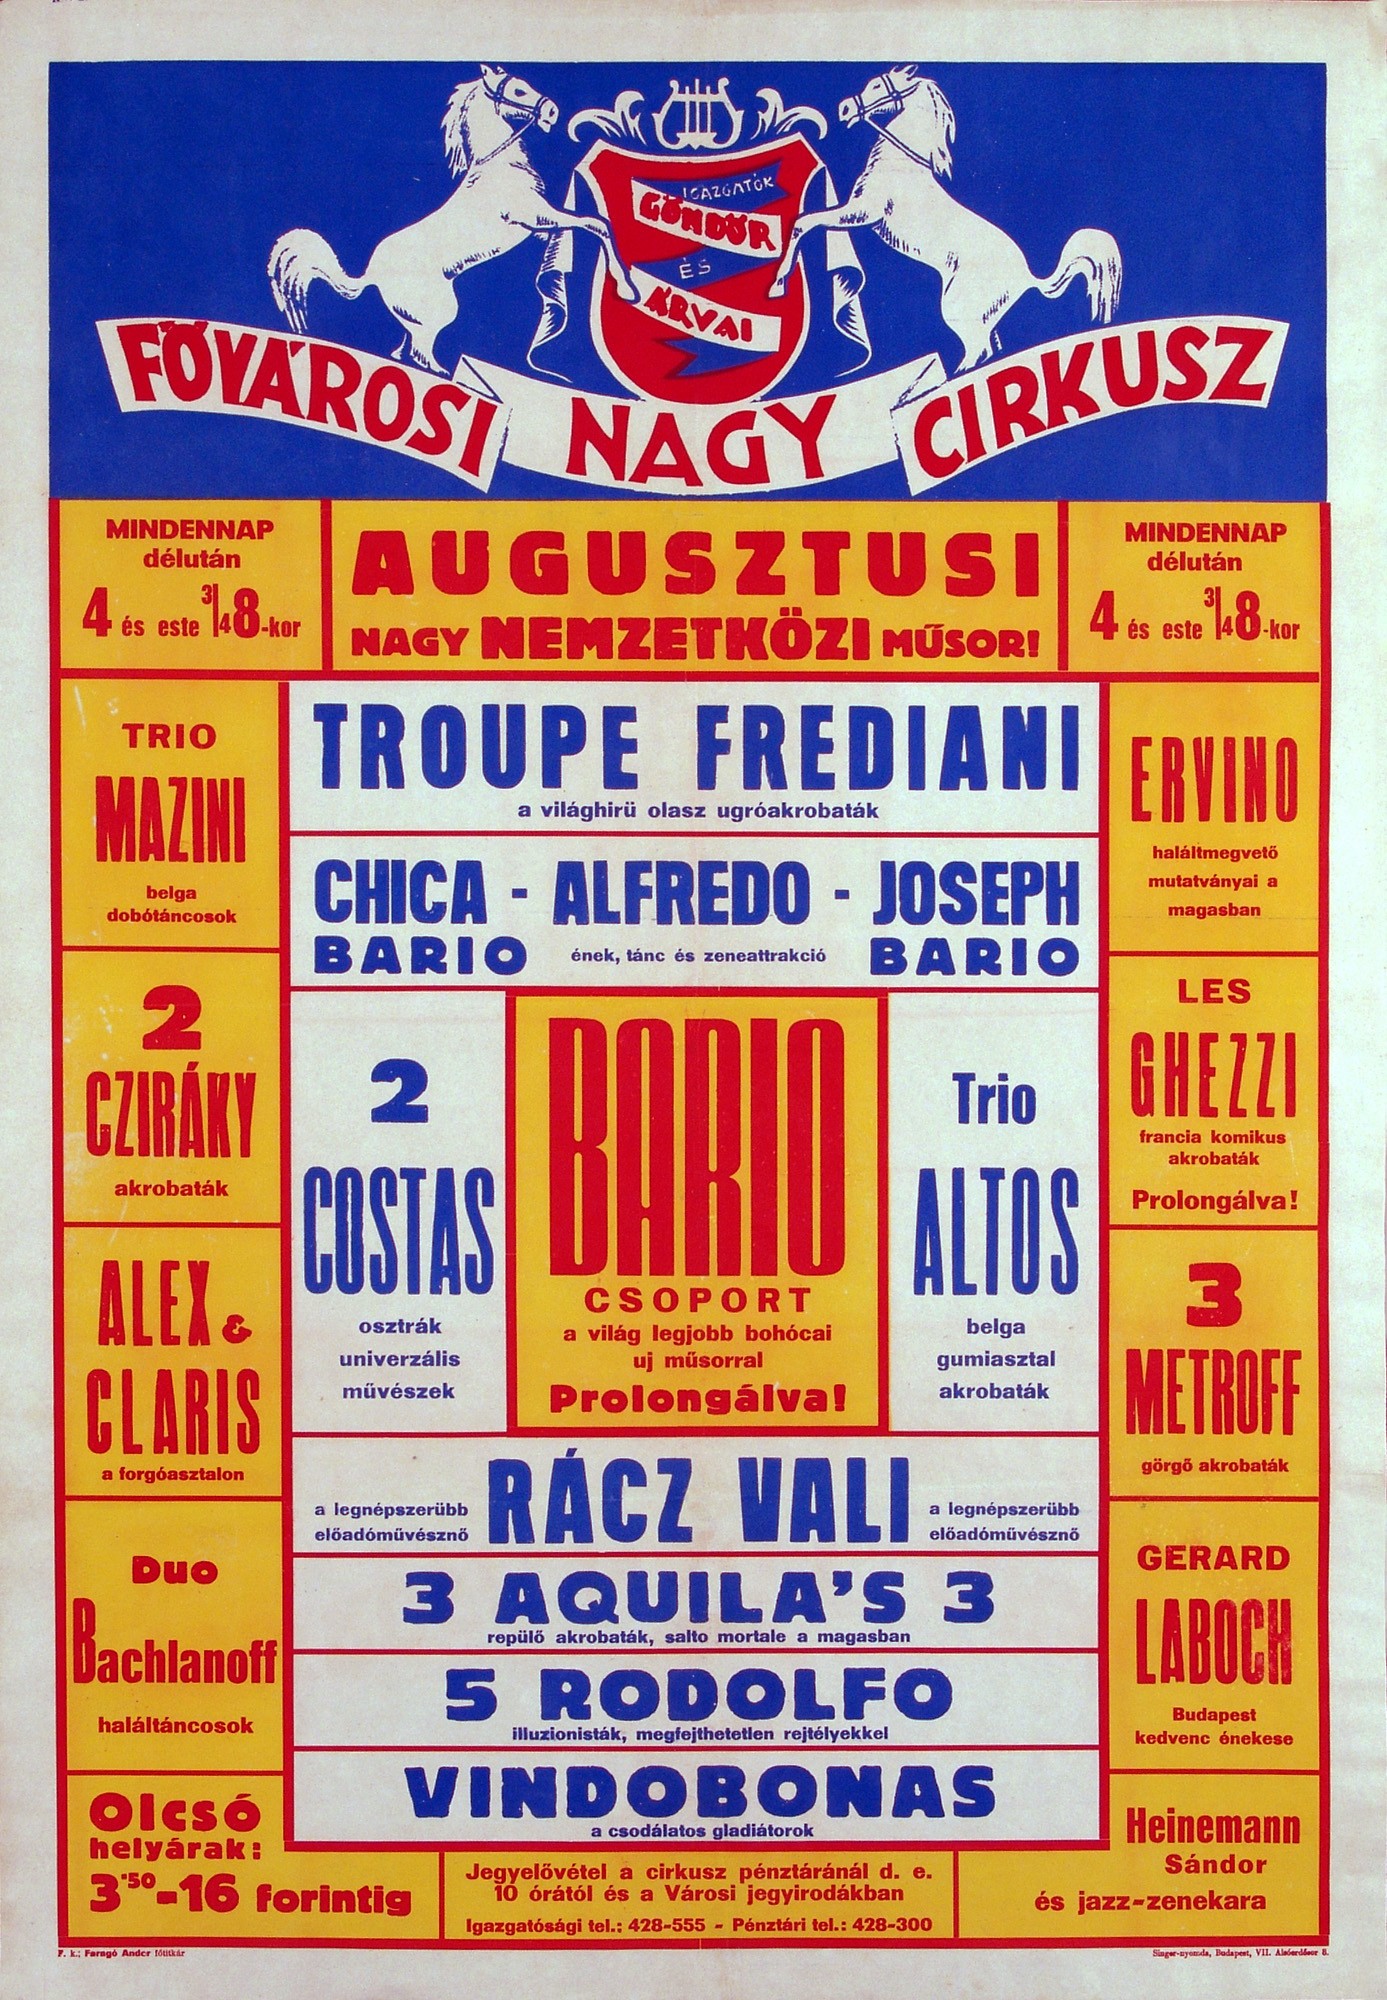 Fővárosi Nagycirkusz műsor plakát (Kecskeméti Katona József Múzeum CC BY-NC-SA)